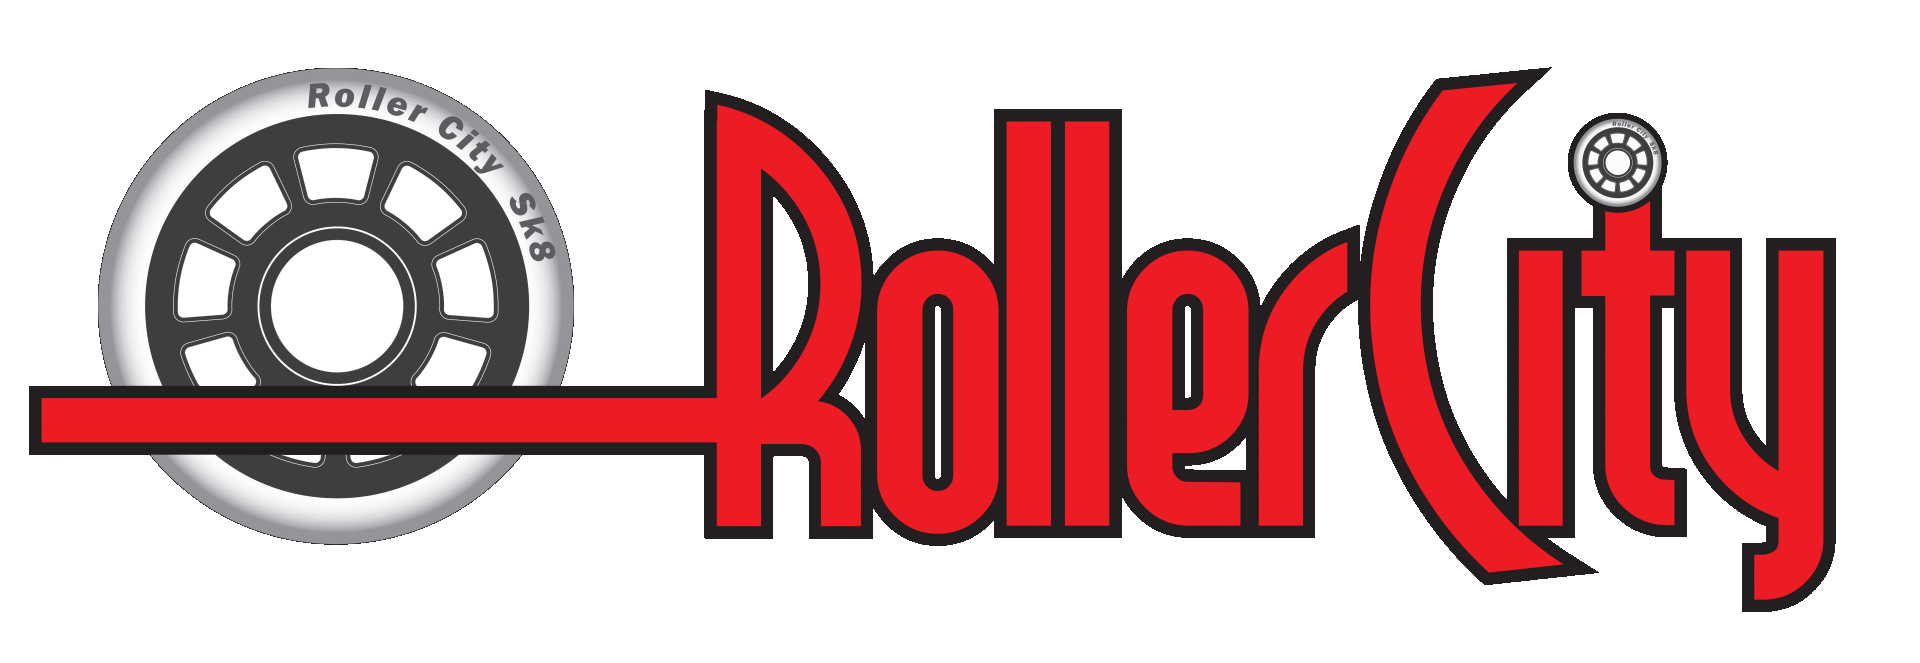 Rollercity Rochdale